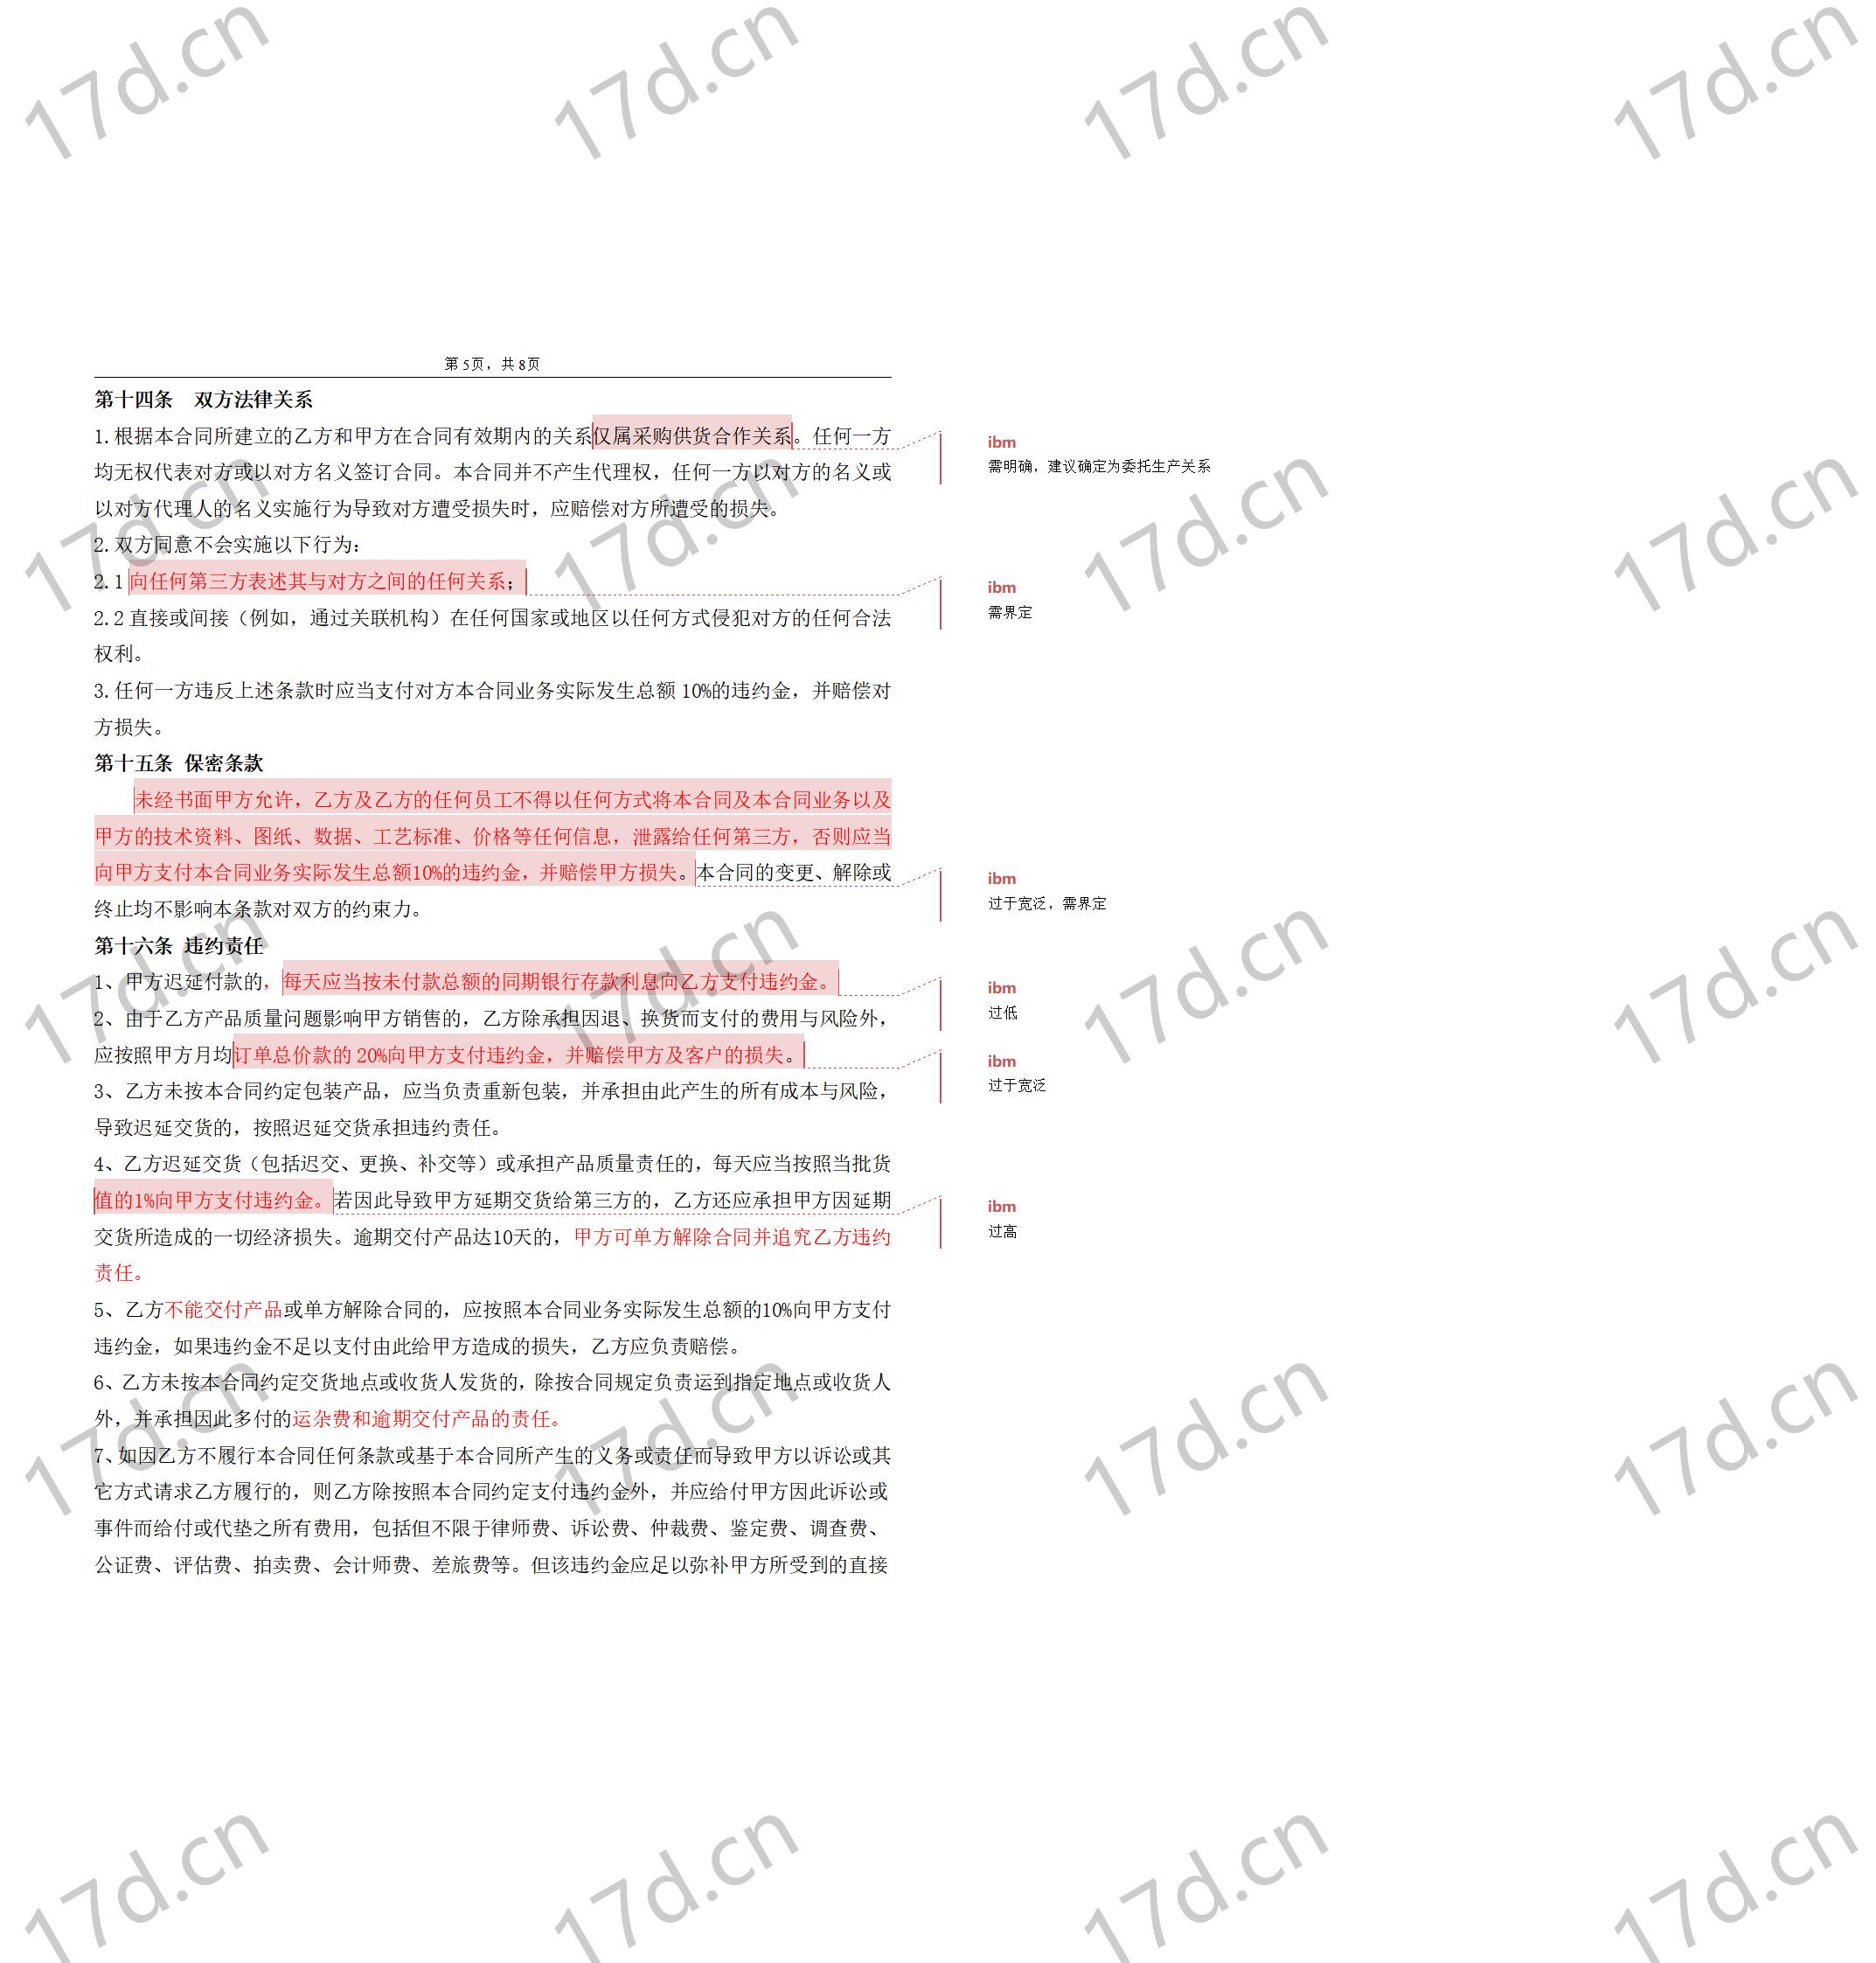 委托加工合同(OEM)2014-我方委托供应商生产加工_05.jpg